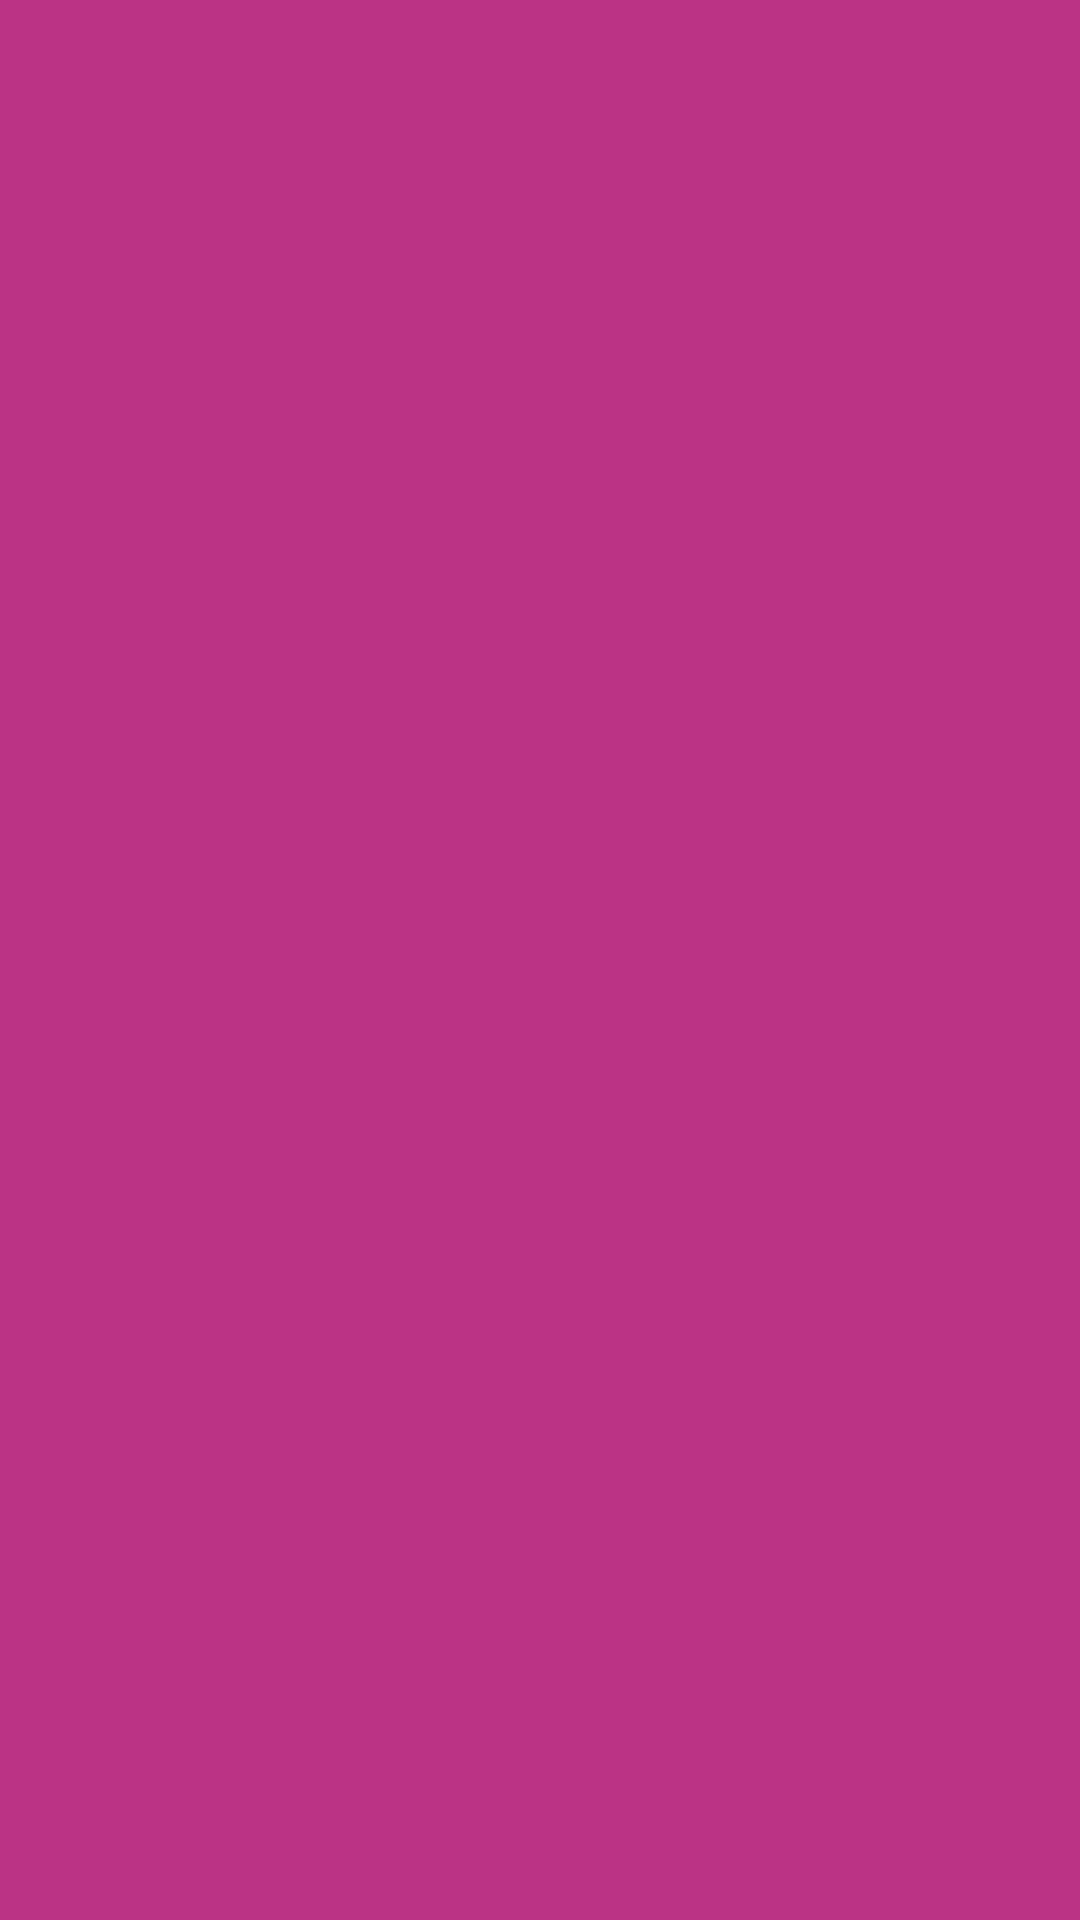 1080x1920 Medium Red-violet Solid Color Background